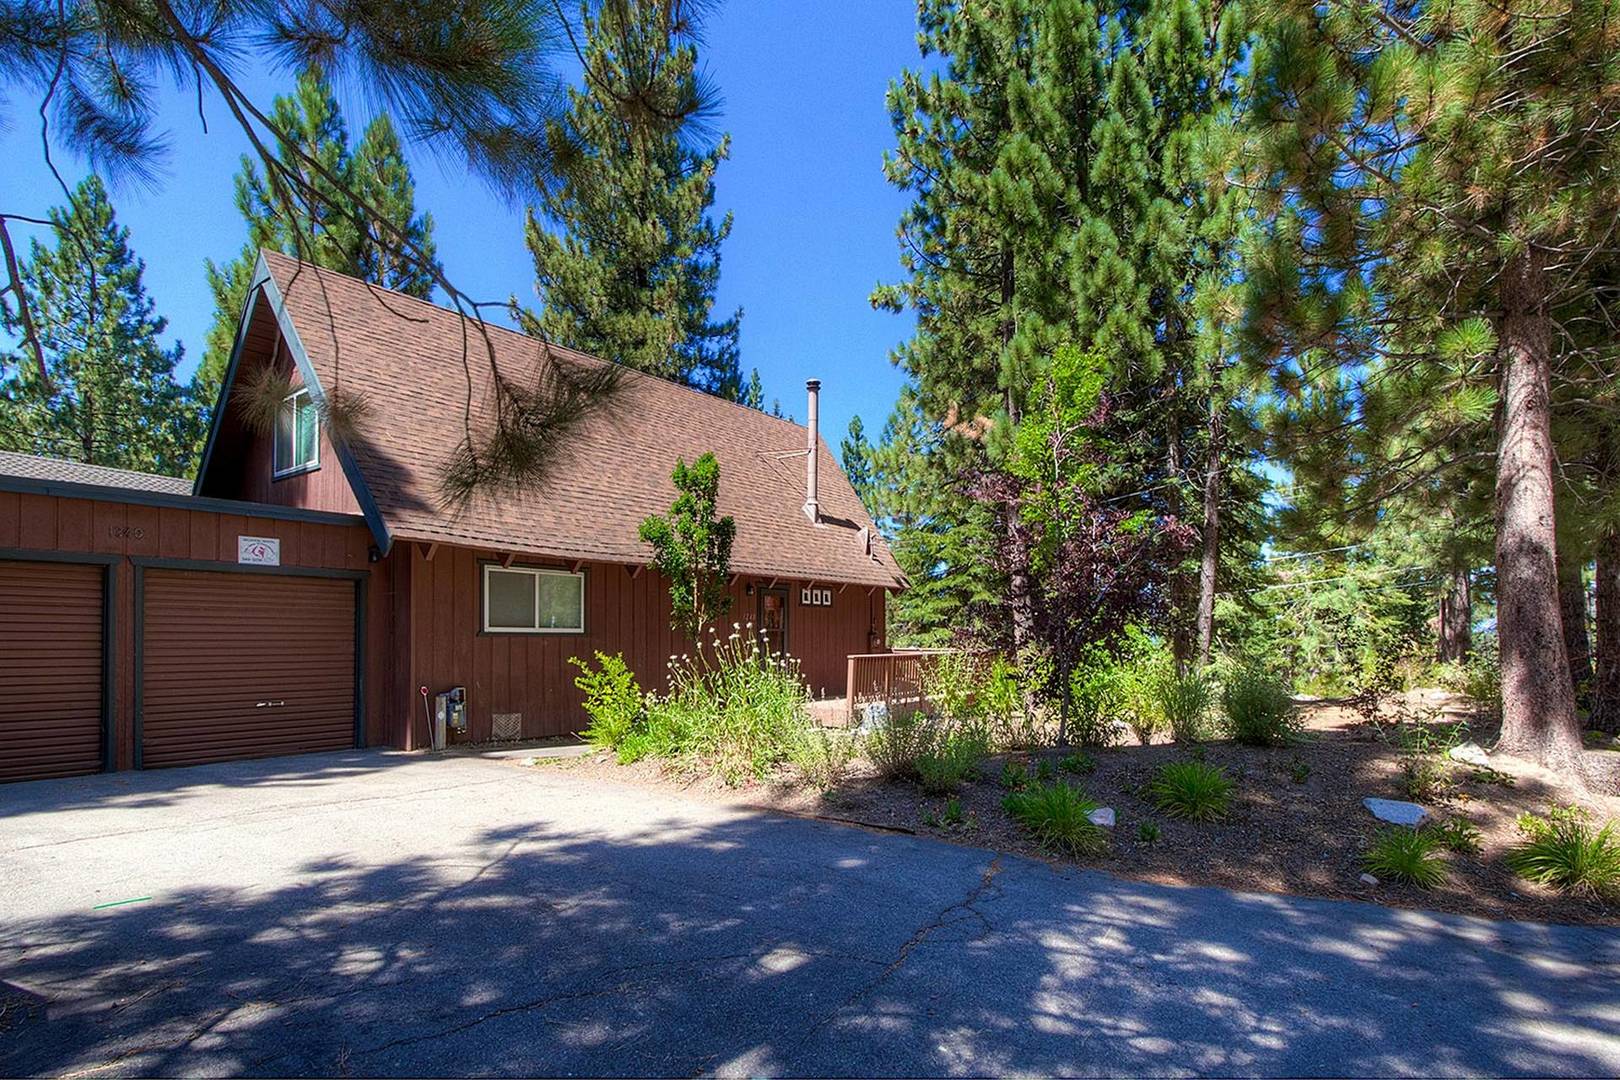 Pine Valley Mountain Lodge: South Lake Tahoe Cabin Rental ...